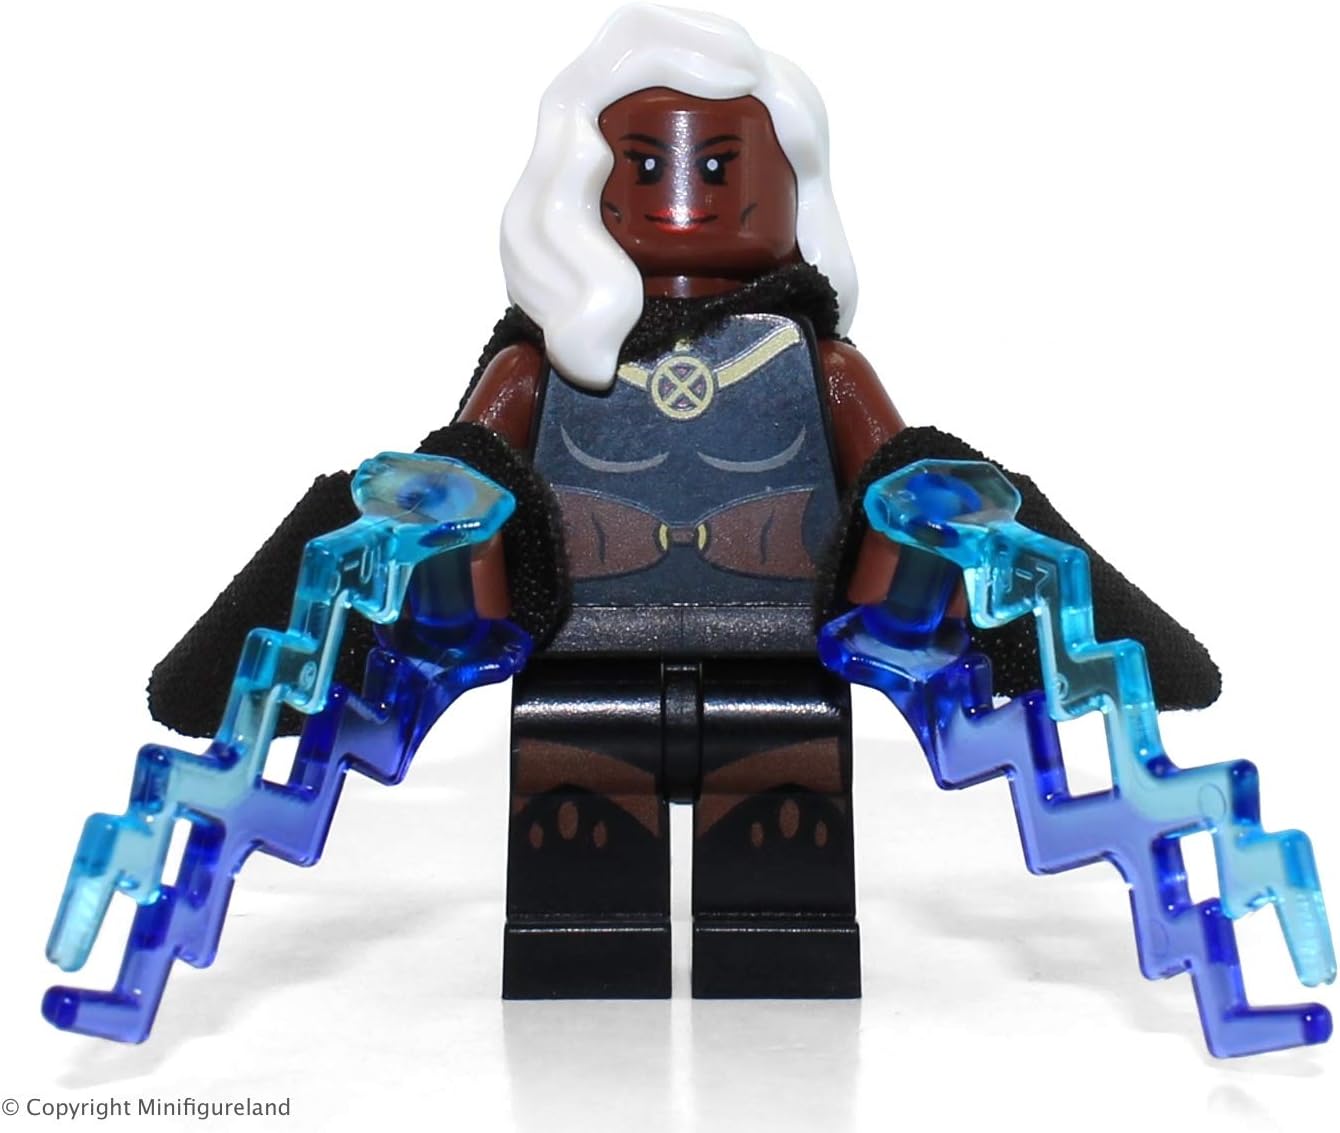 Lego 2014 Marvel X-men Storm minifigure